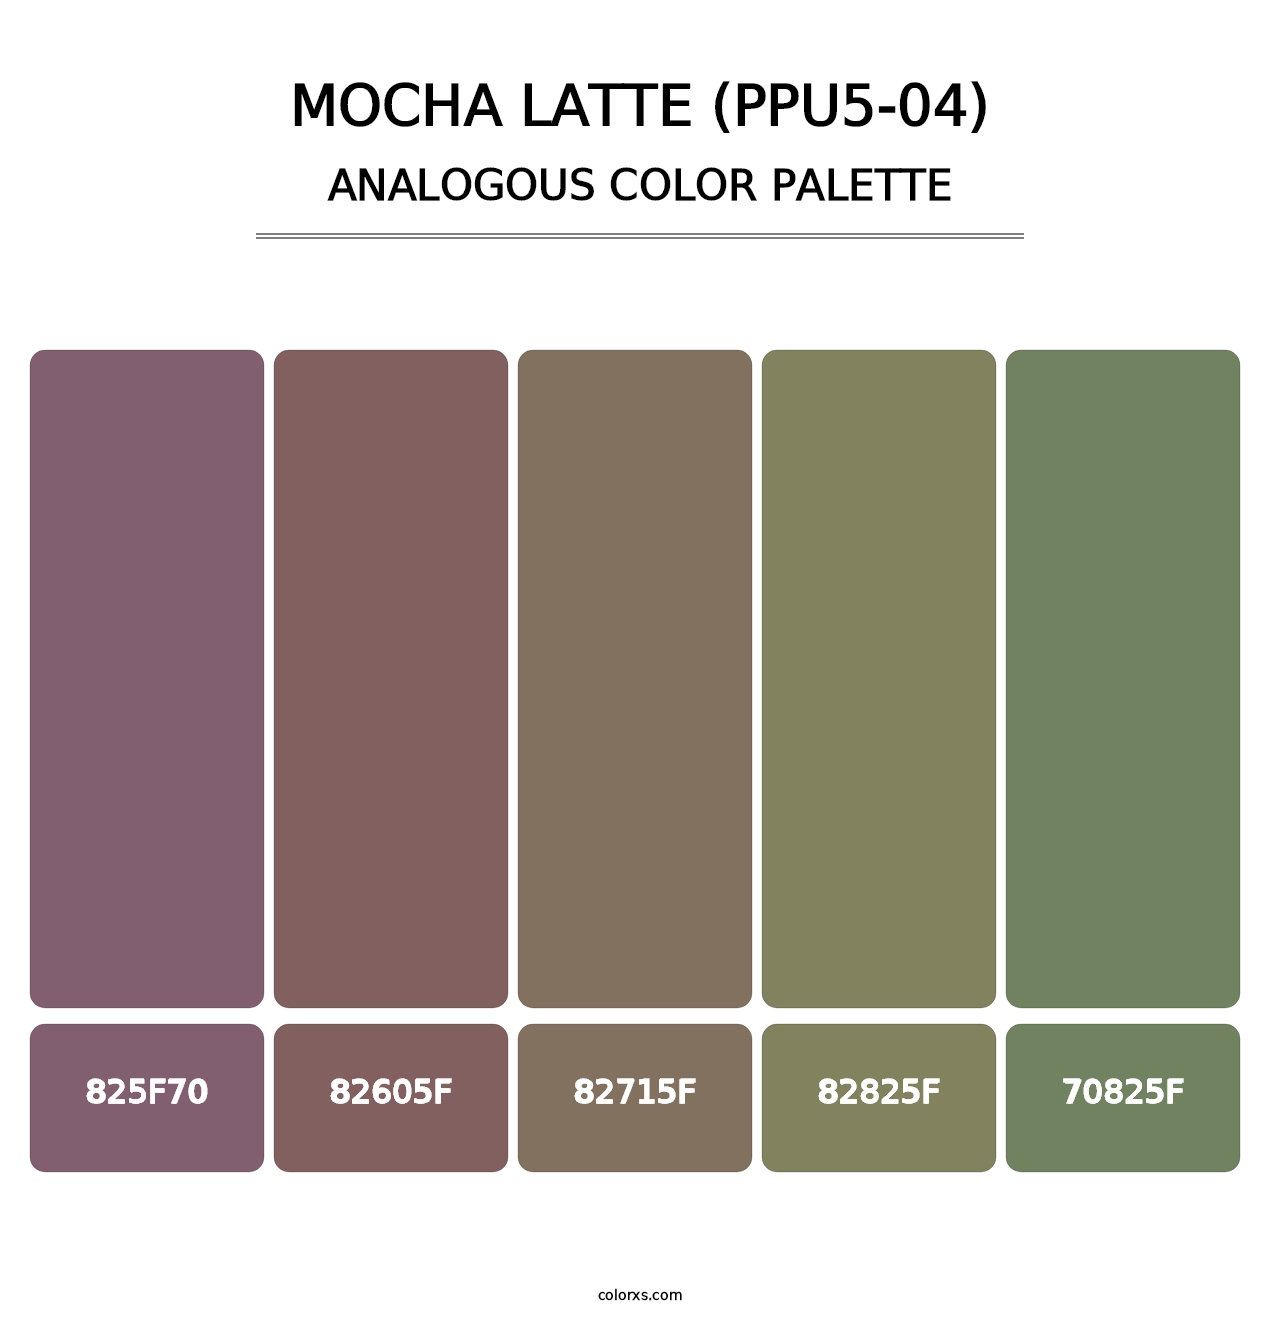 Mocha Latte (PPU5-04) - Analogous Color Palette